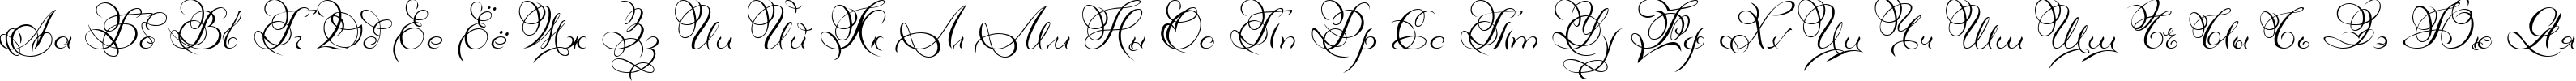 Пример написания русского алфавита шрифтом DianaCTT